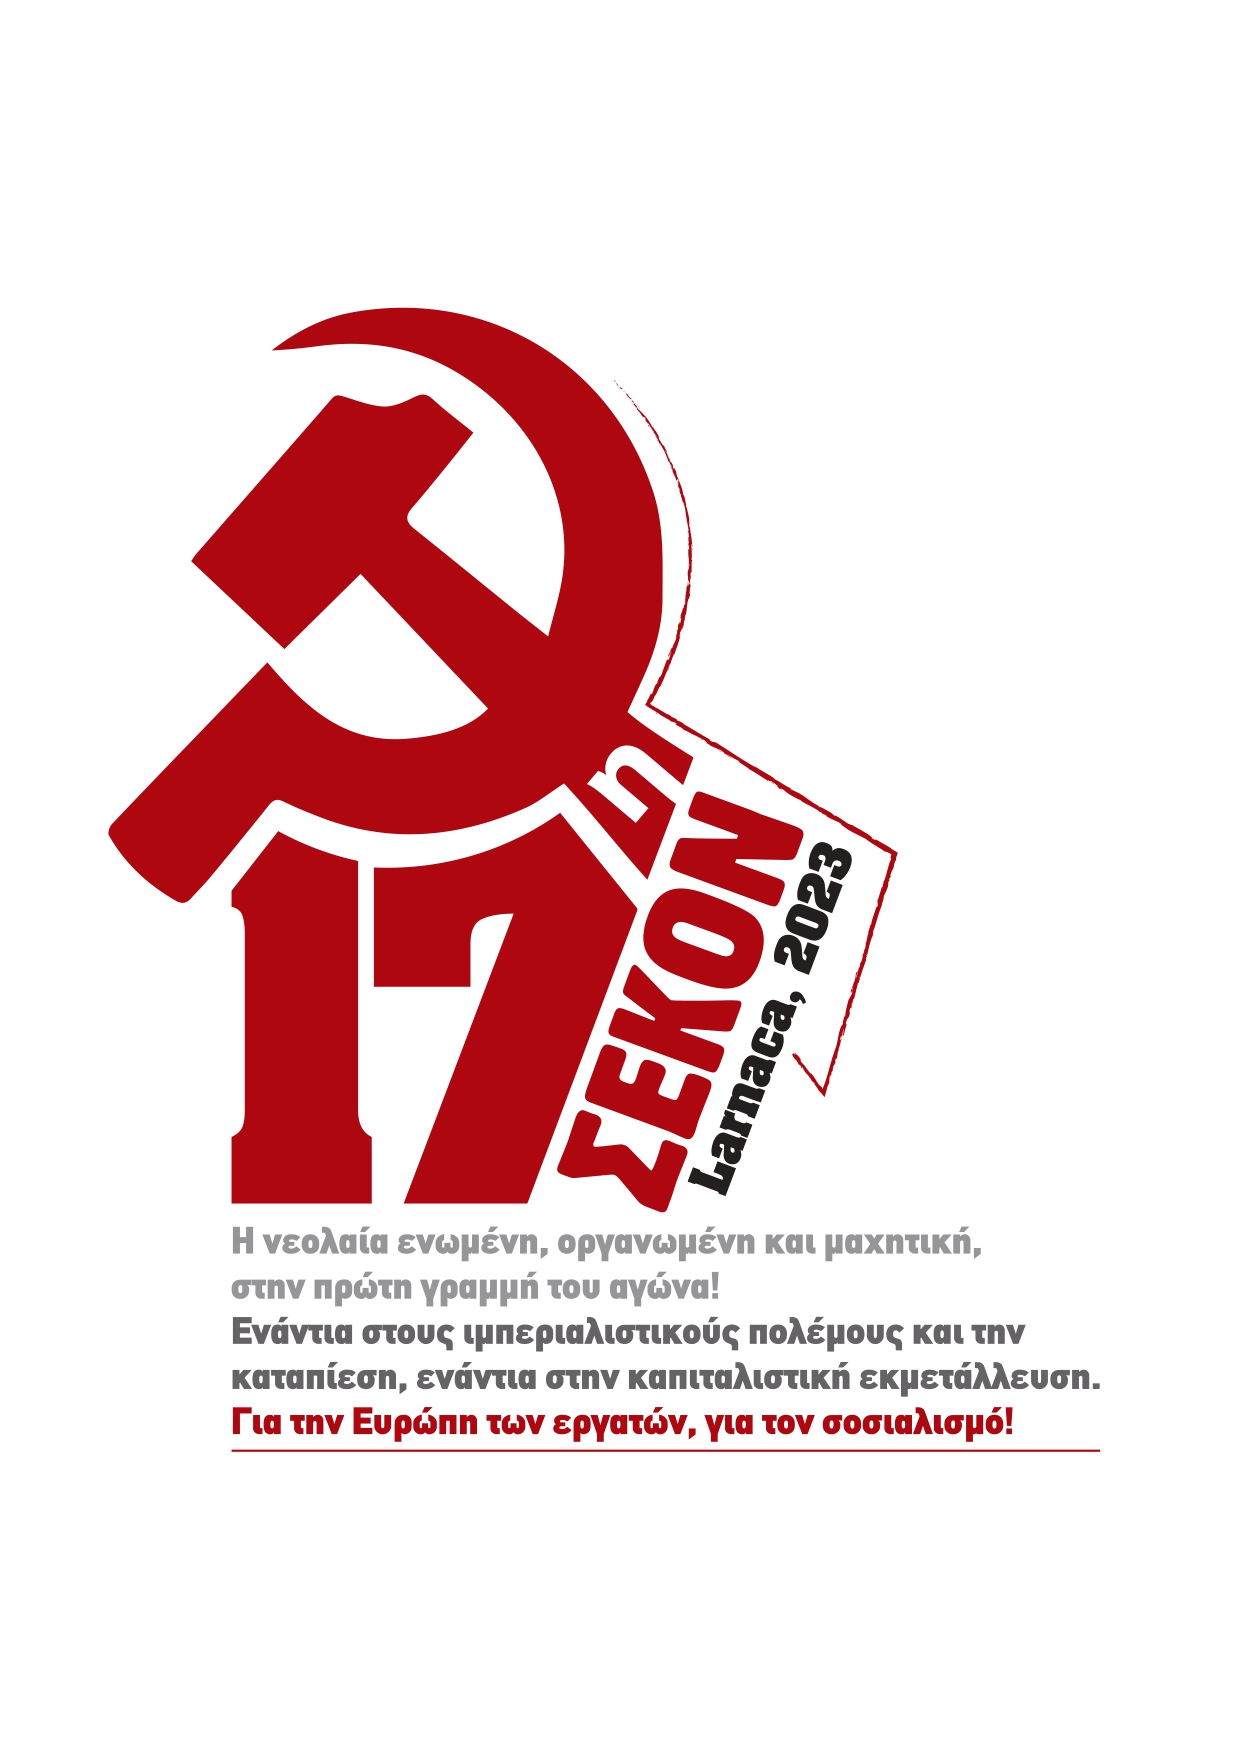 Ανακοίνωση μετά την 17η Συνάντηση Ευρωπαϊκών Κομμουνιστικών Οργανώσεων Νεολαίας